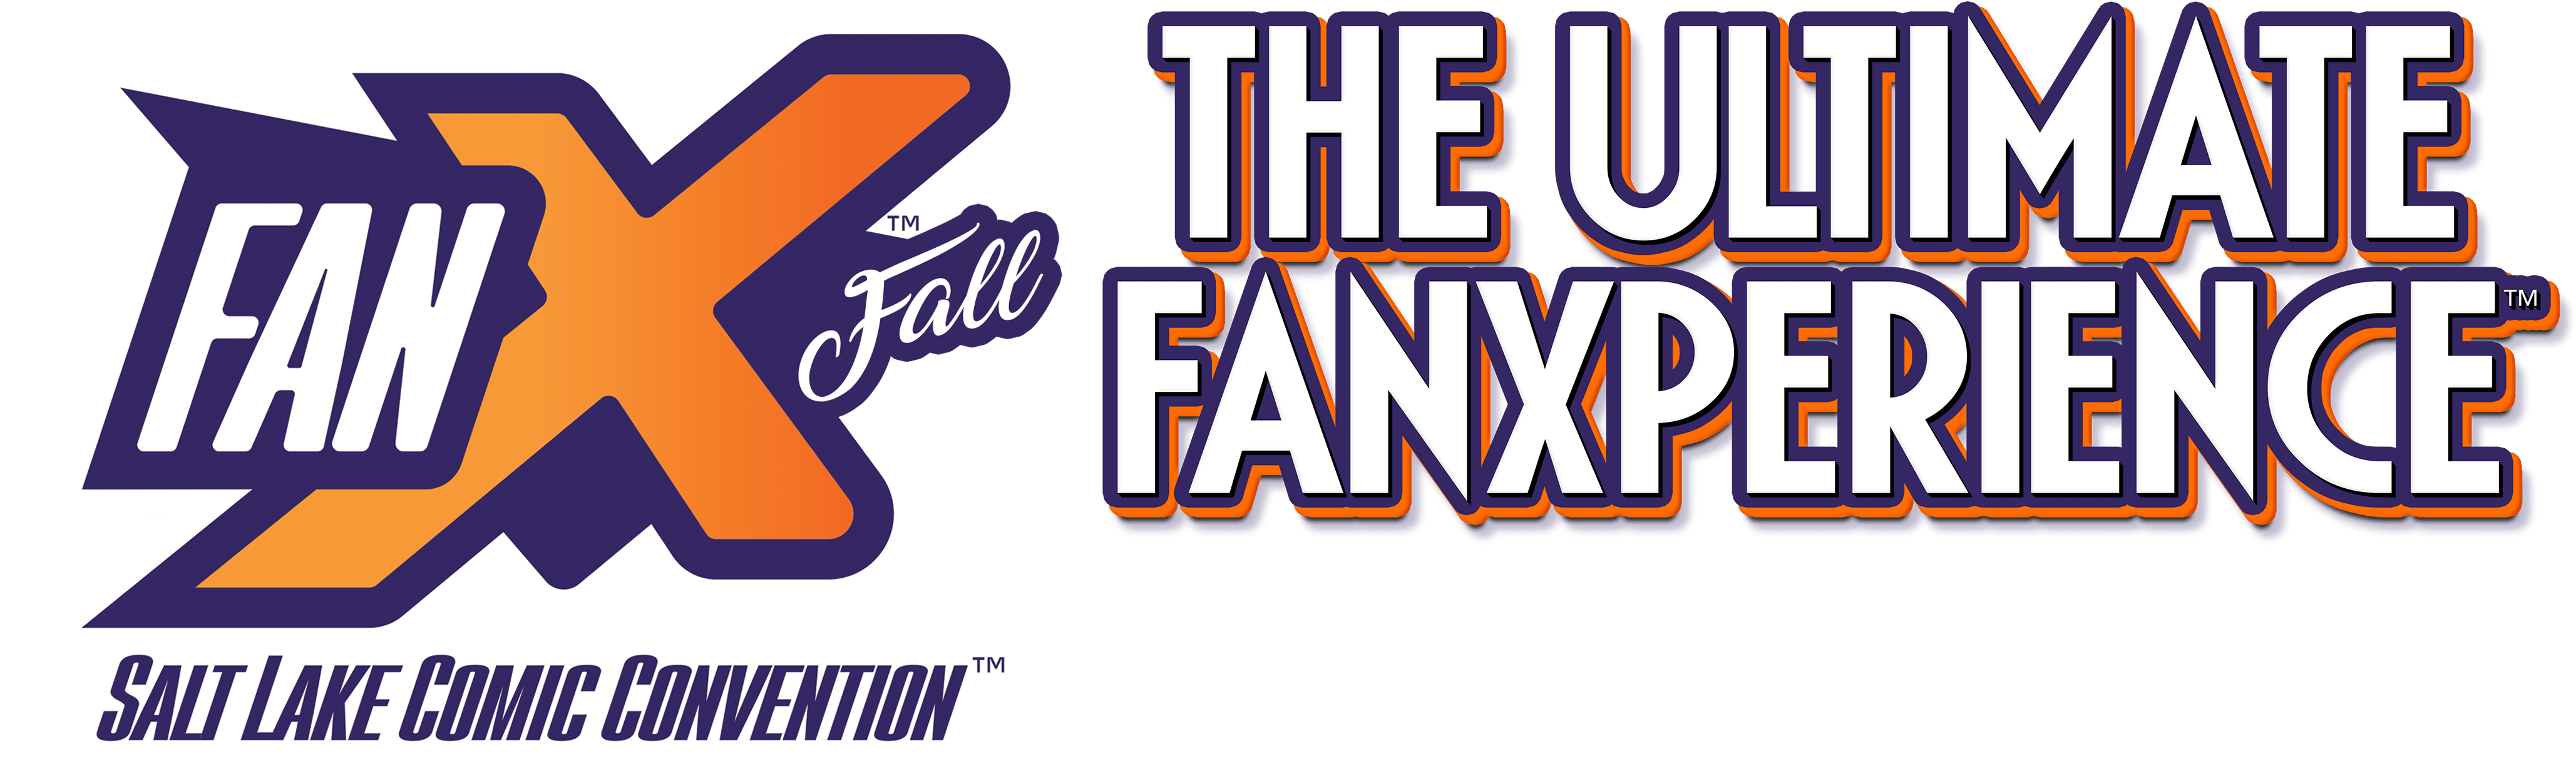 Fan X Fall Ultimate Fan Experience Logo PNG